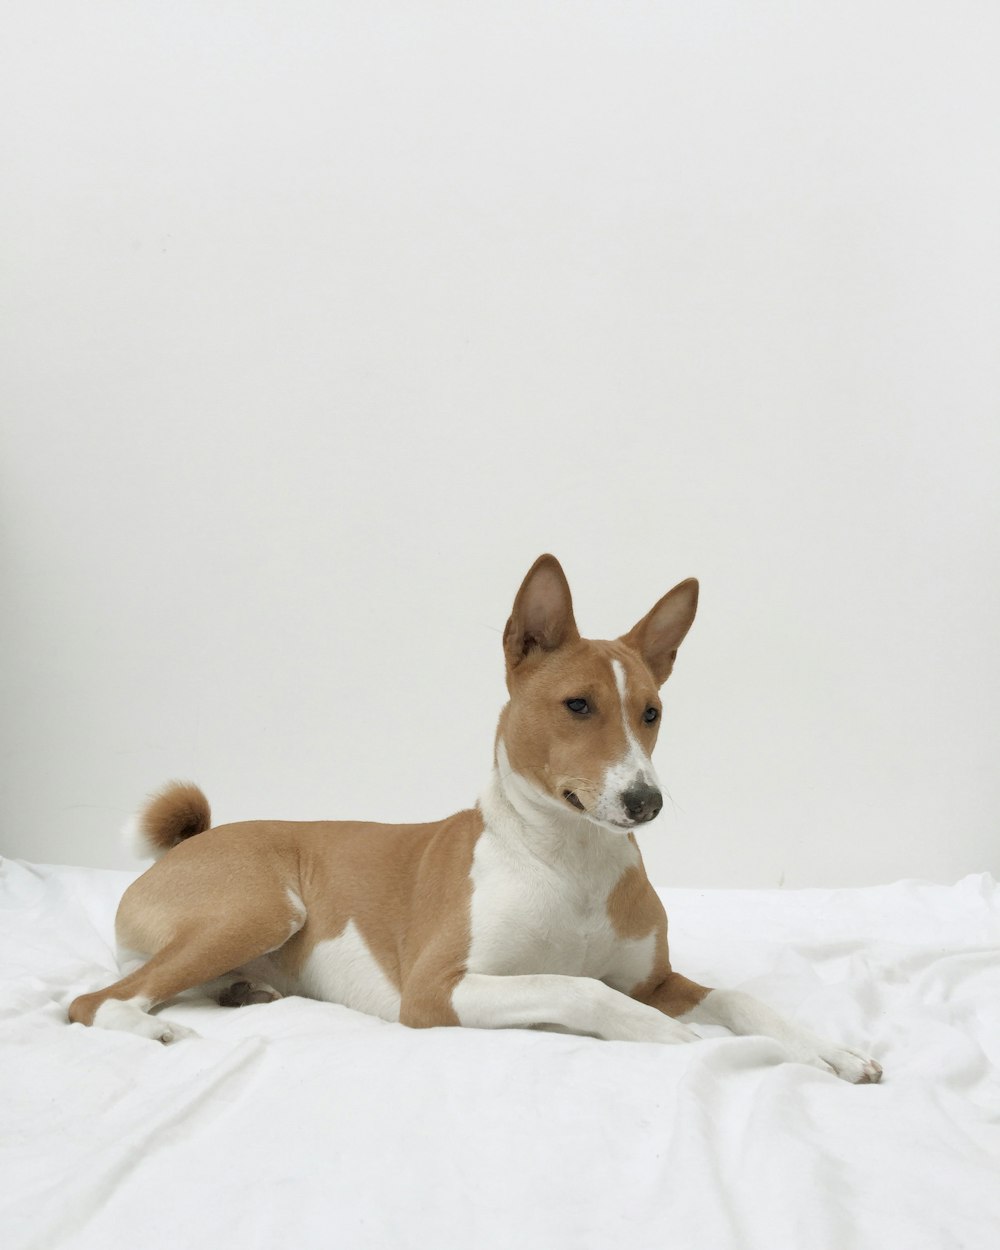 Un chien brun et blanc assis sur une couverture blanche.